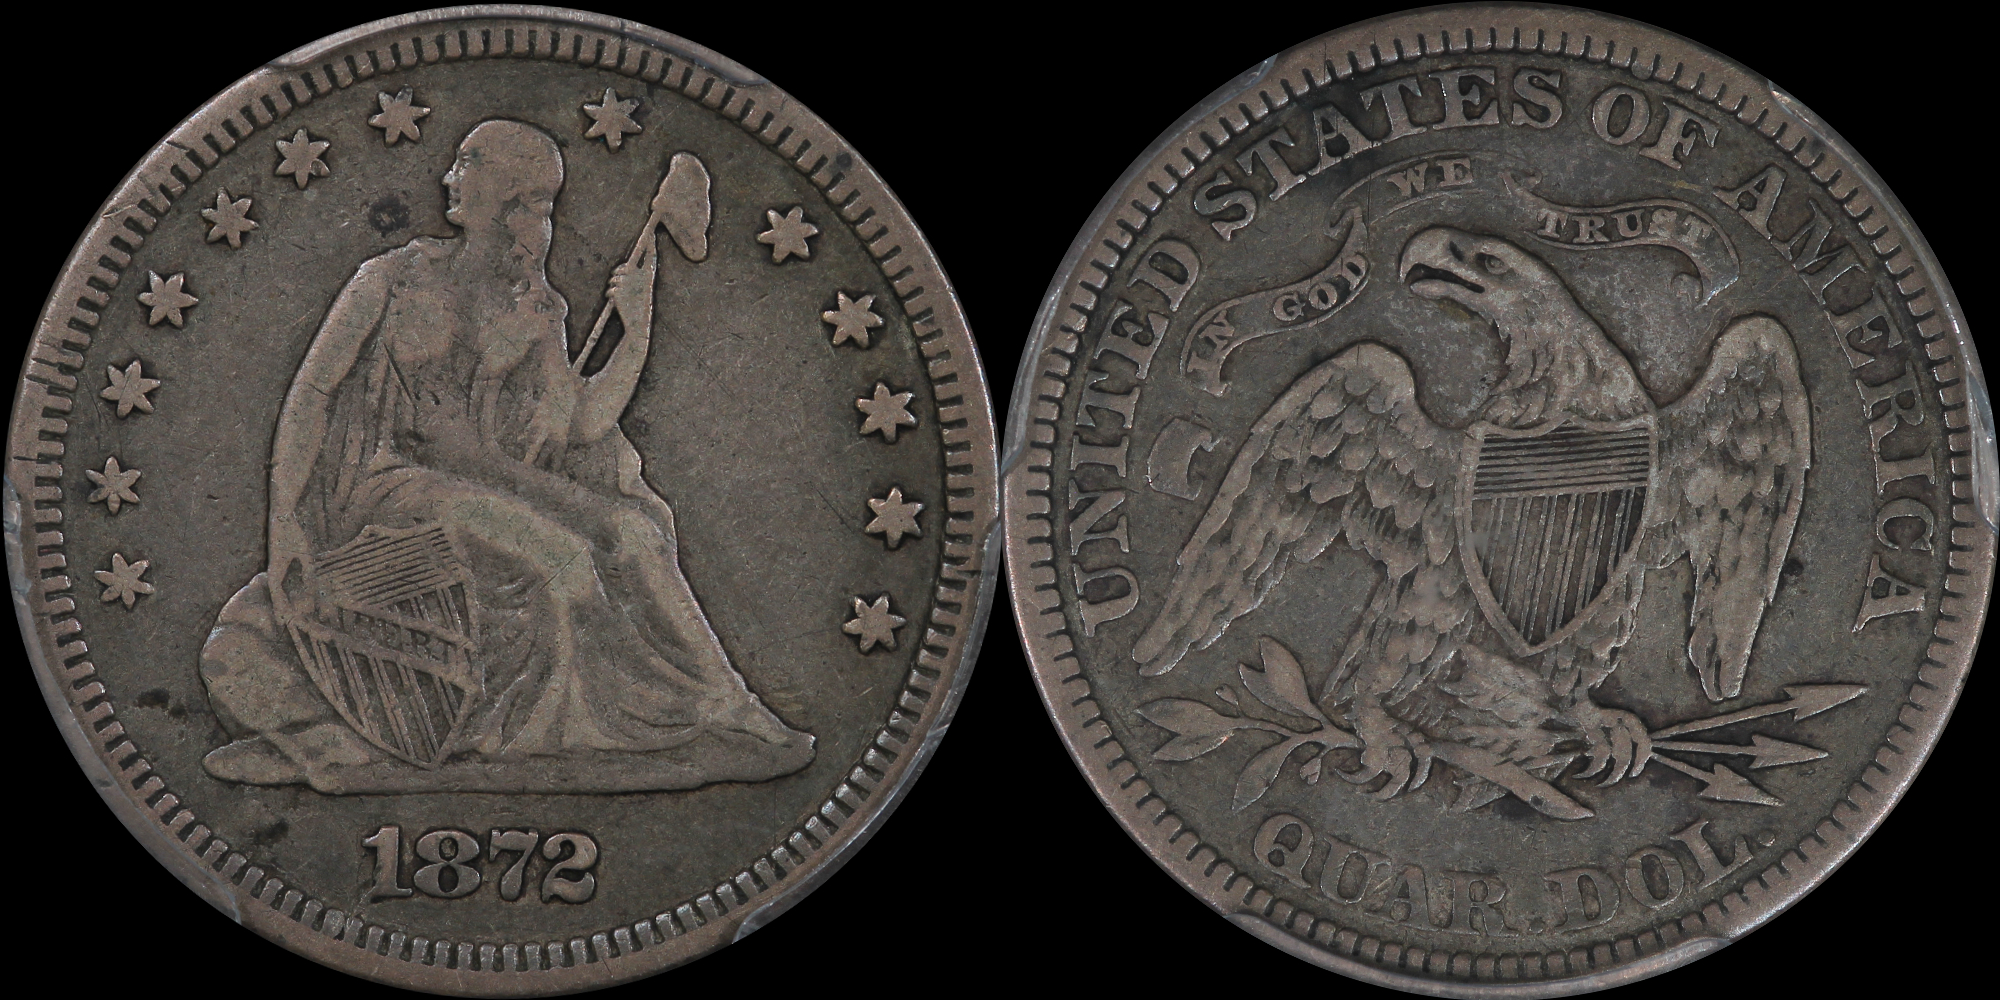  1872-25c